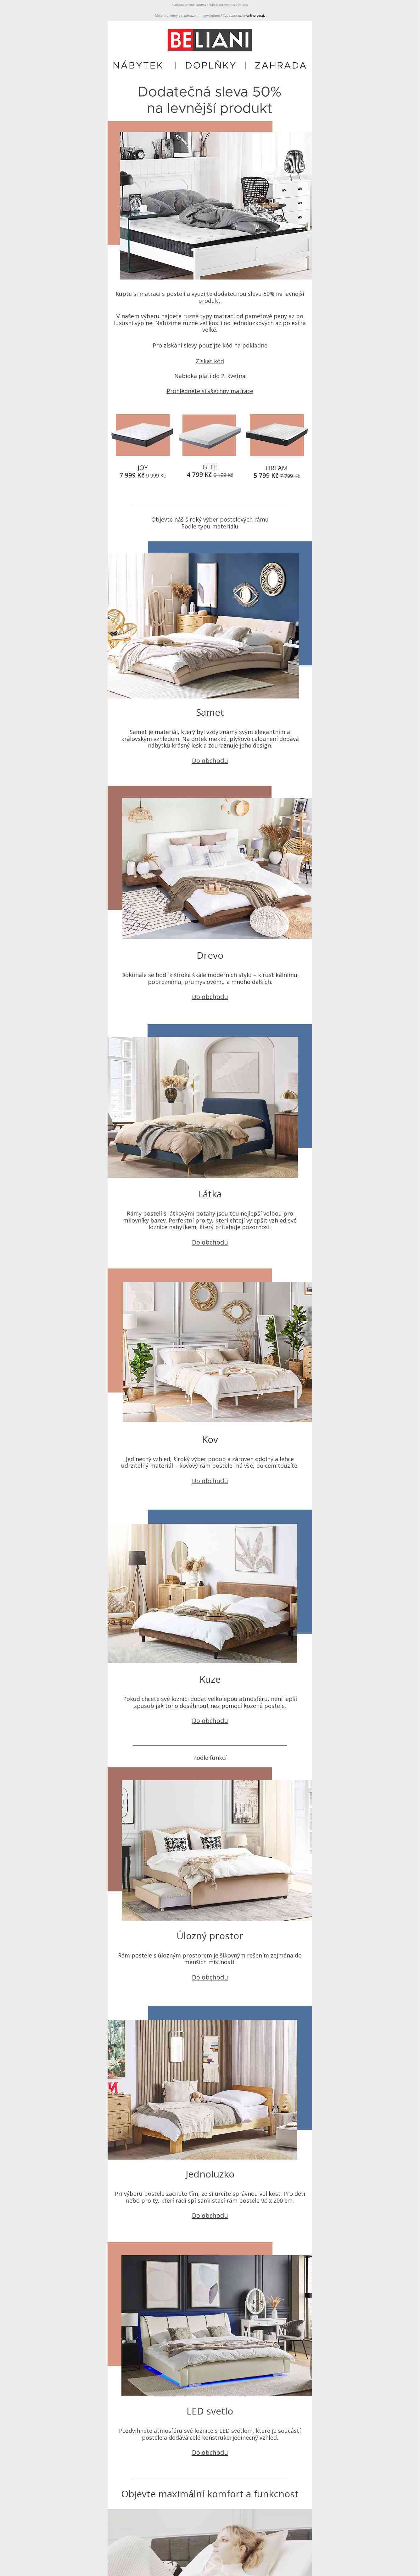 Kupte si matraci spolu s rámem postele a získejte dodatečnou slevu 50% na levnější produkt 🛏️